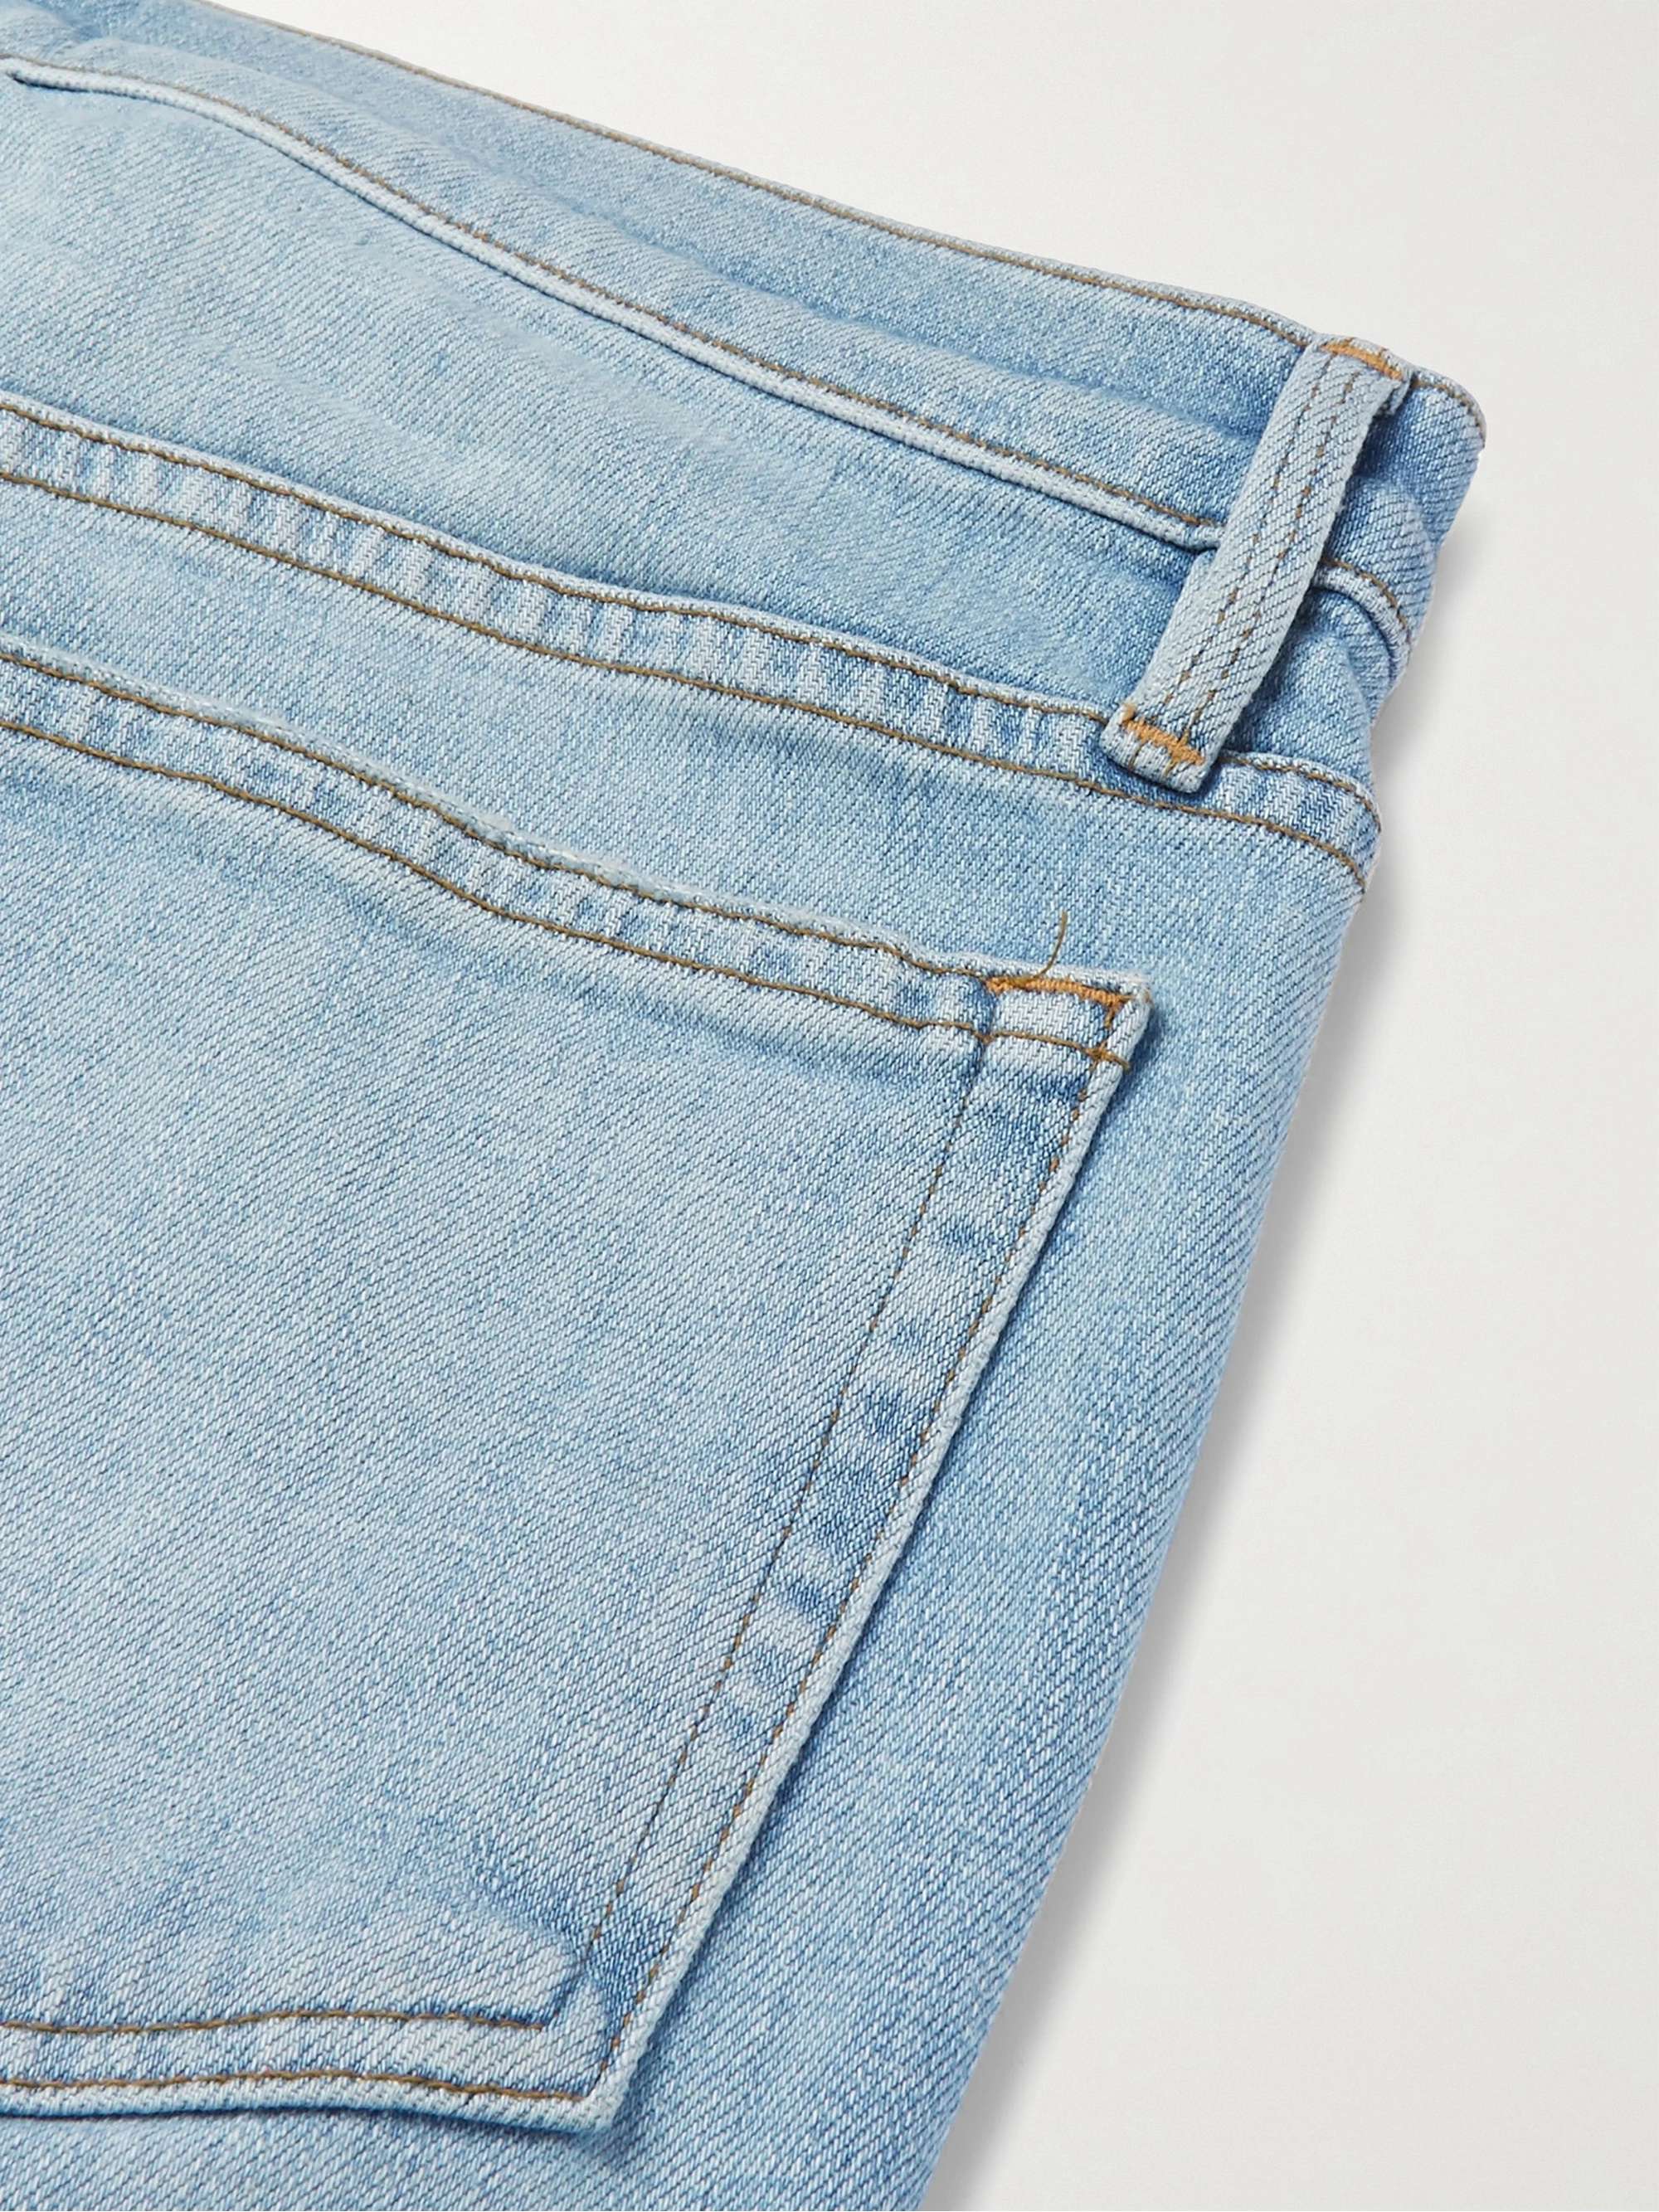 Light denim L'Homme Slim-Fit Stretch-Denim Jeans | FRAME | MR PORTER